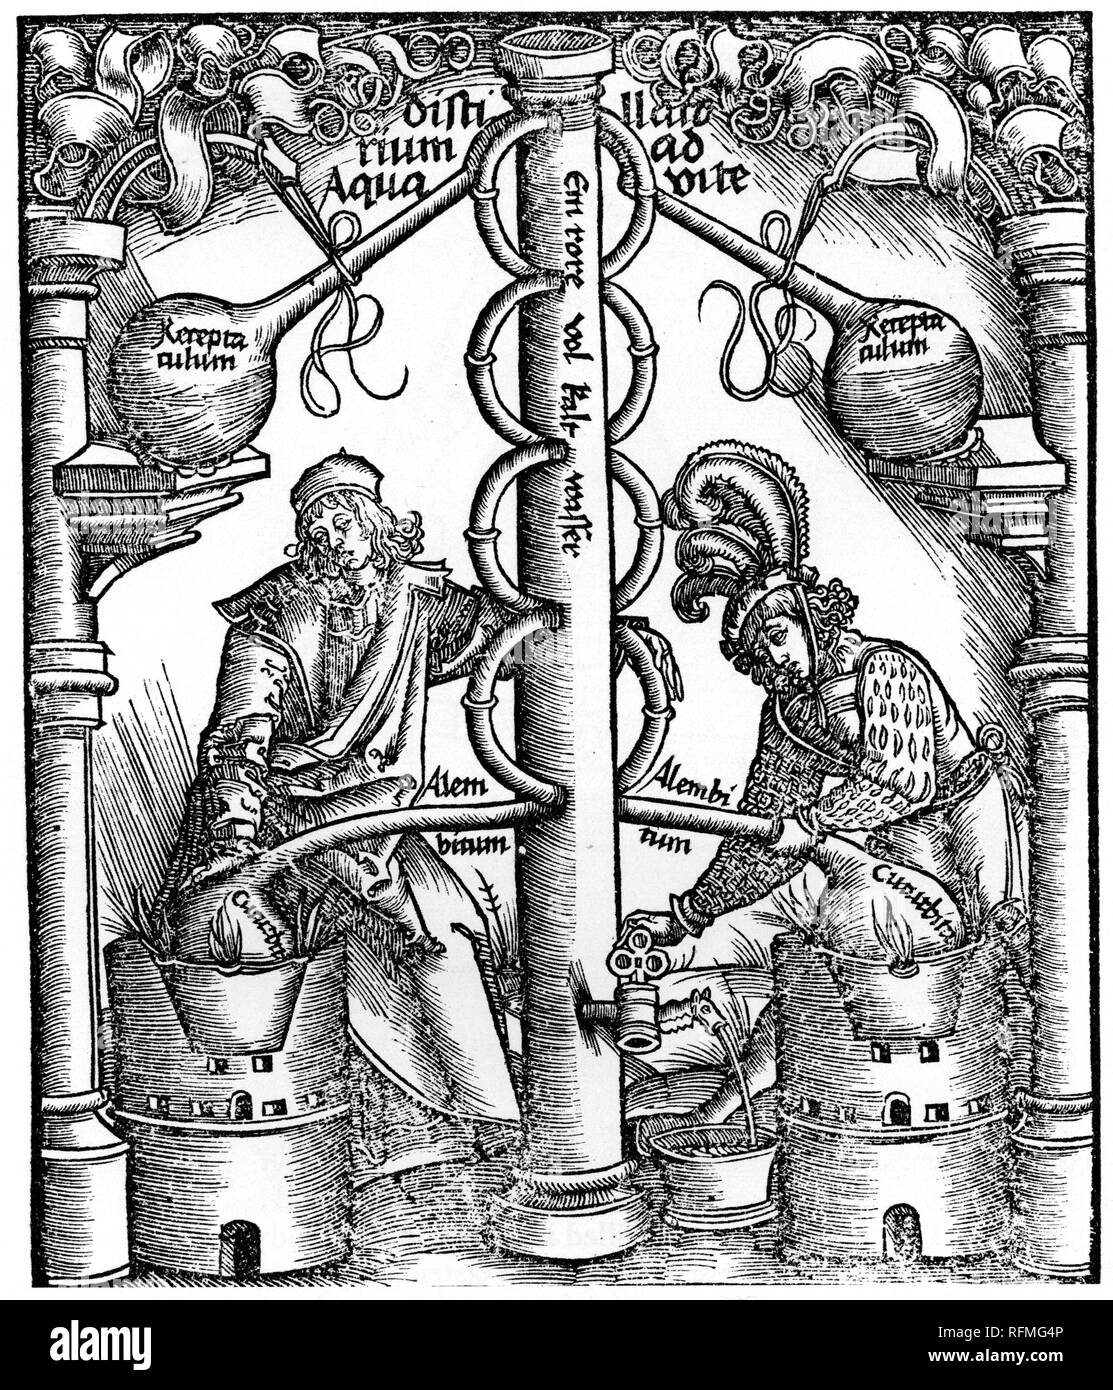 A still with a fractionating column, 1512. A still with a fractionating column, 1512. By Hieronymus Brunschwig (c1450-c1512). From Liber de arte distillandi de compositis, 1512, by Hieronymus Brunschwig (c1450-c1512). Stock Photo